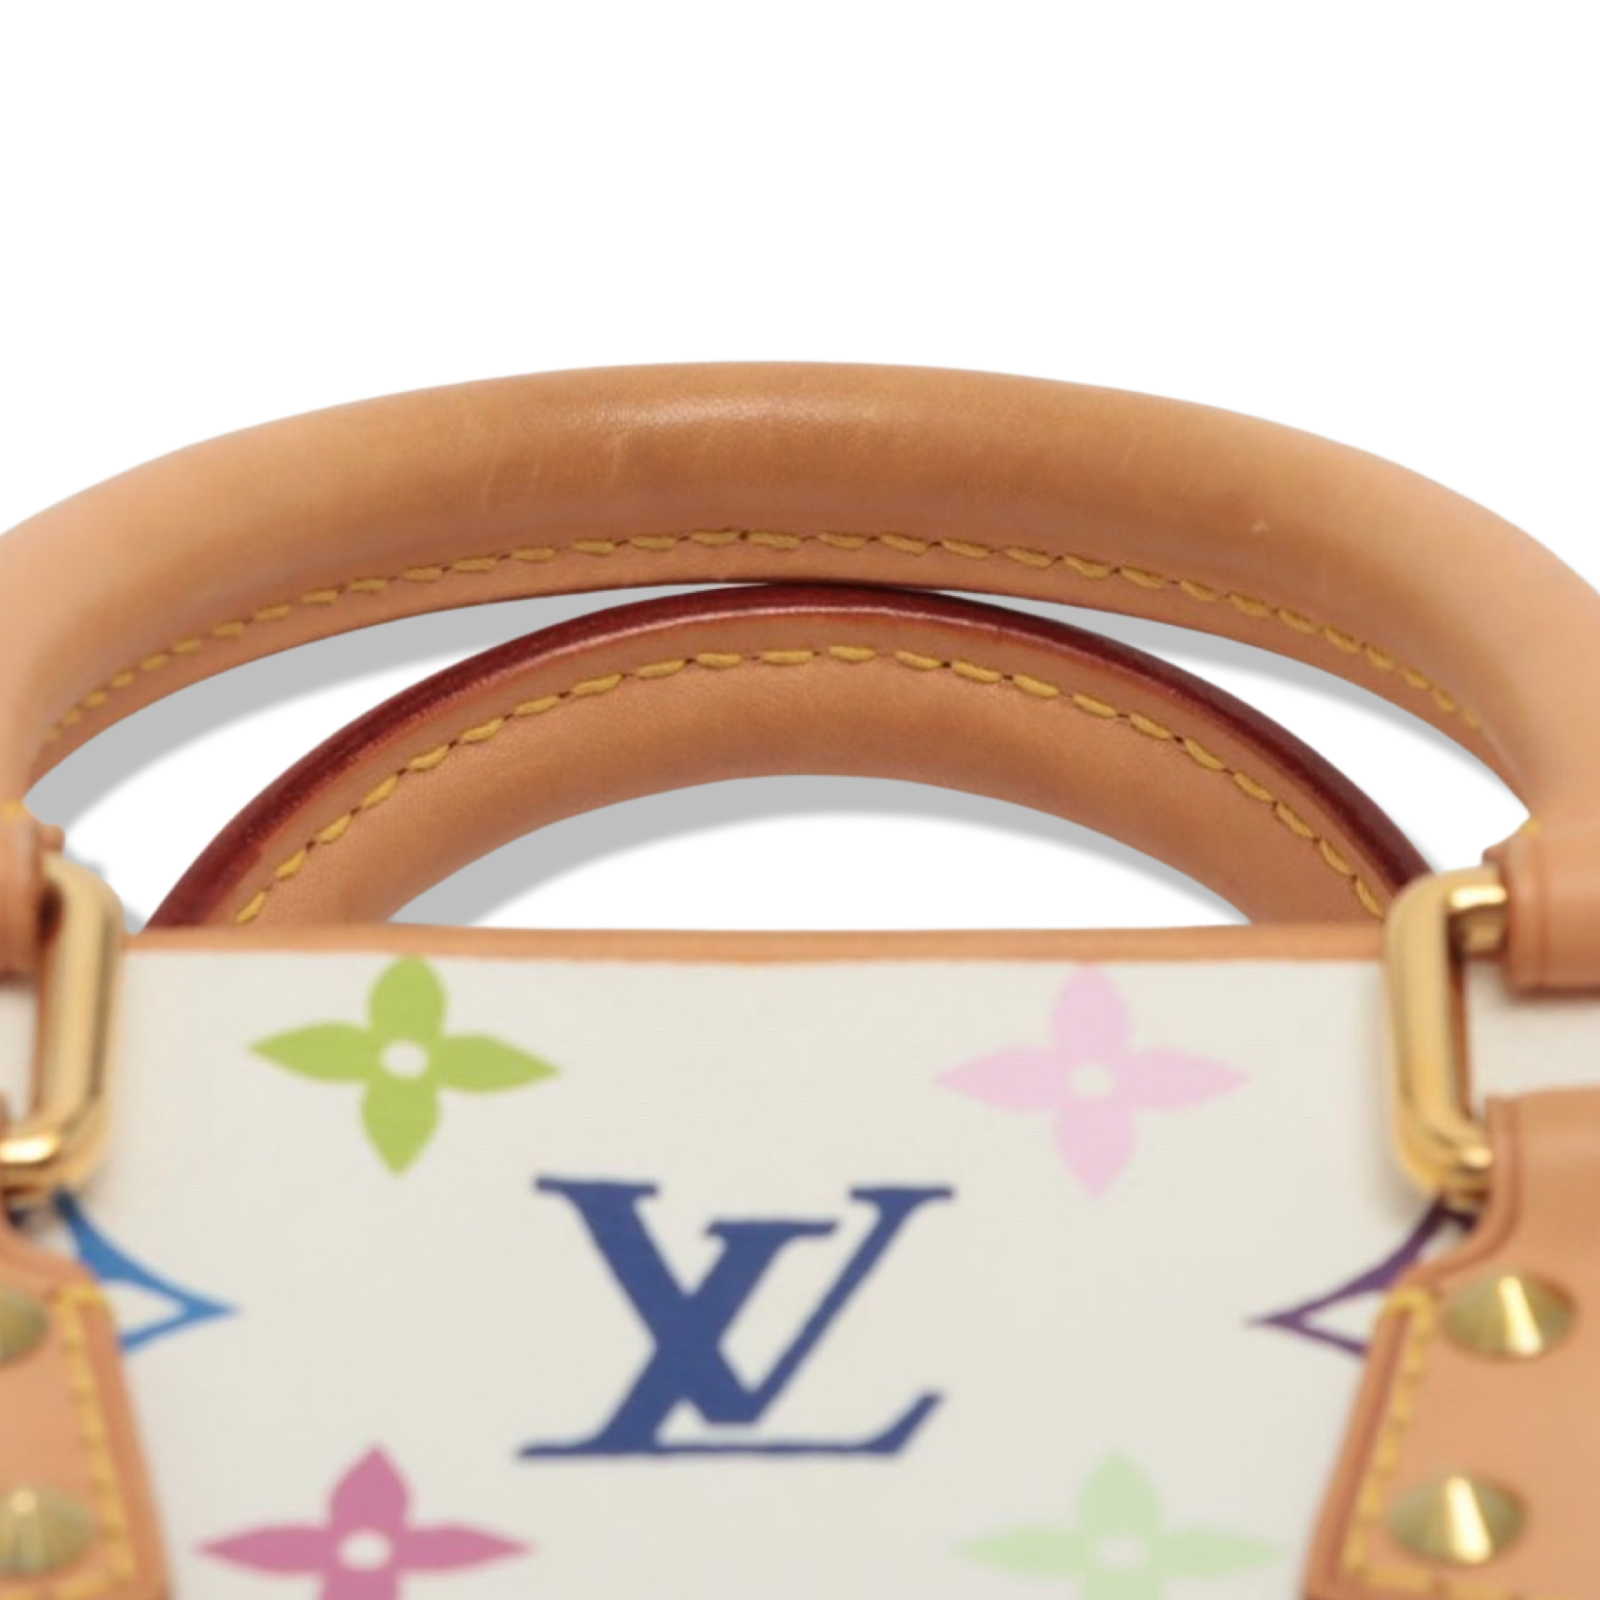 Louis Vuitton White Monogram Multicolor Trouville Bag.  Luxury